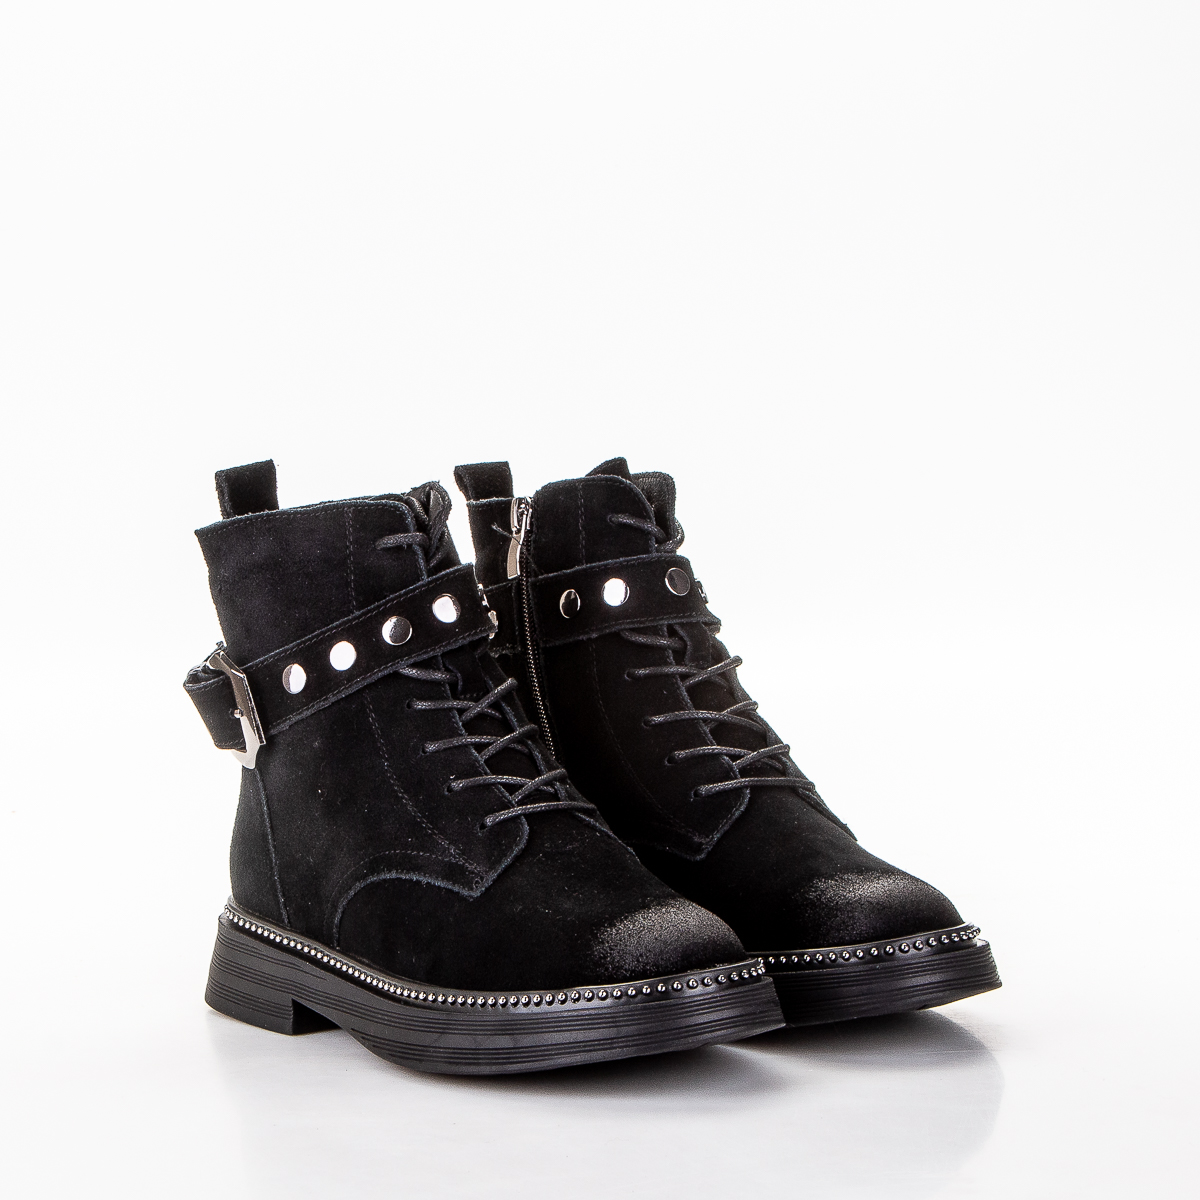 Фото Ботинки женские XM8602BPZM black купить на lauf.shoes